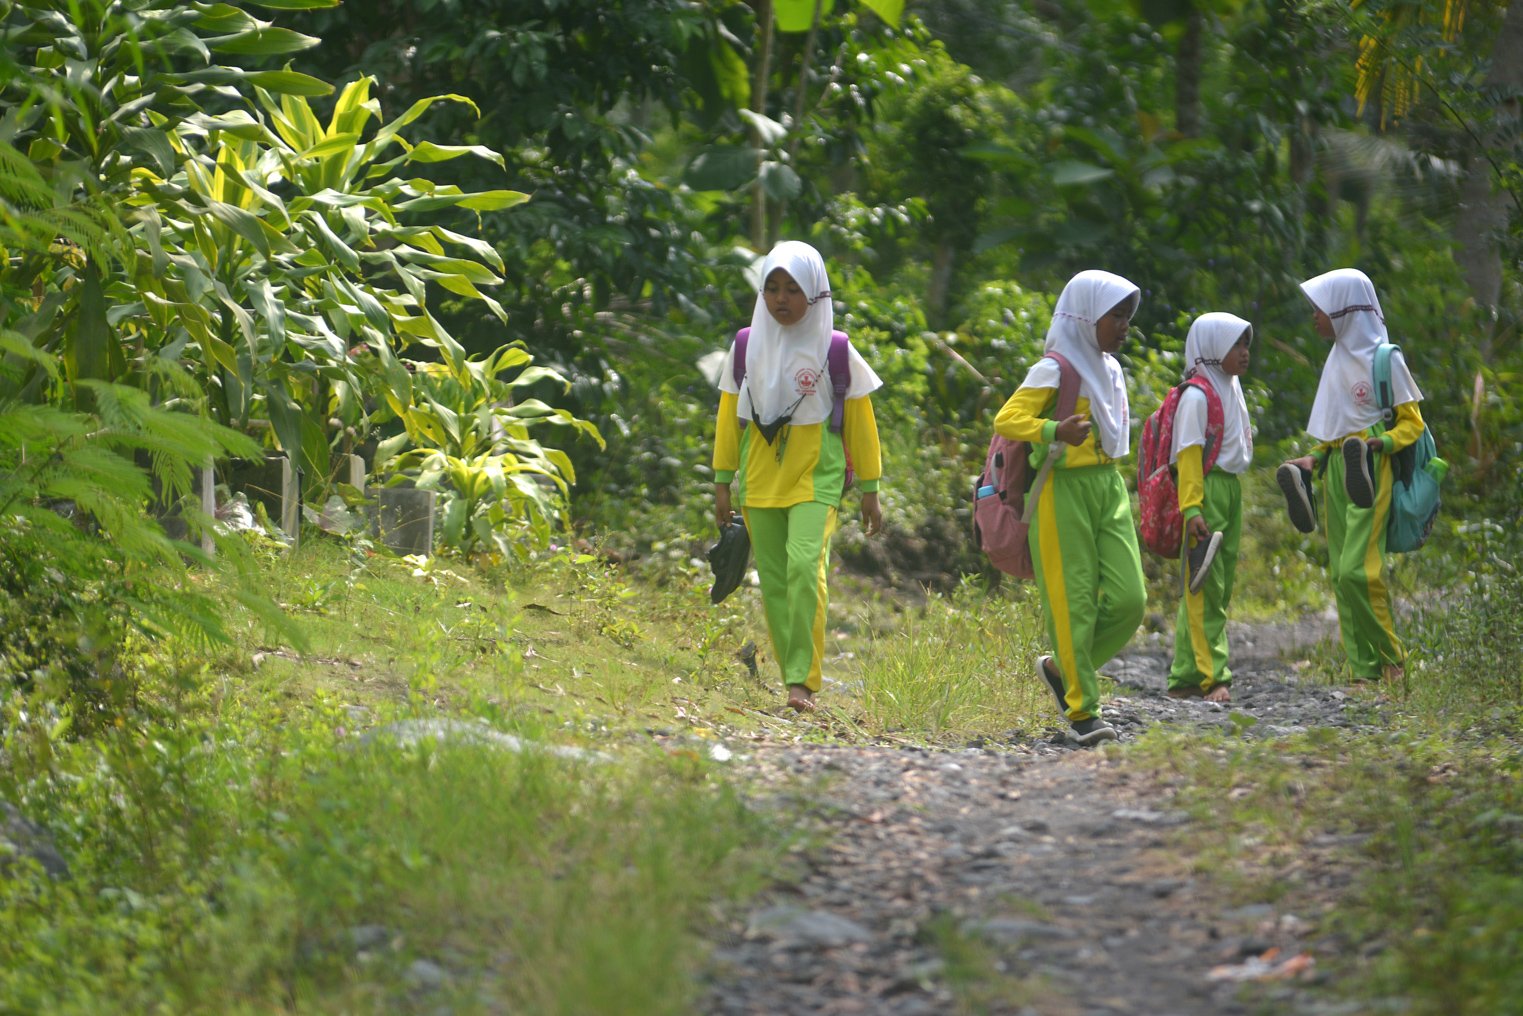 Sejumlah siswa SDN Jugosari 03 melintasi jalan setapak usai mengikuti kegiatan belajar di rumah salah satu warga di Dusun Sumberlangsep, Desa Jugosari, Candipuro, Lumajang, Jawa Timur.